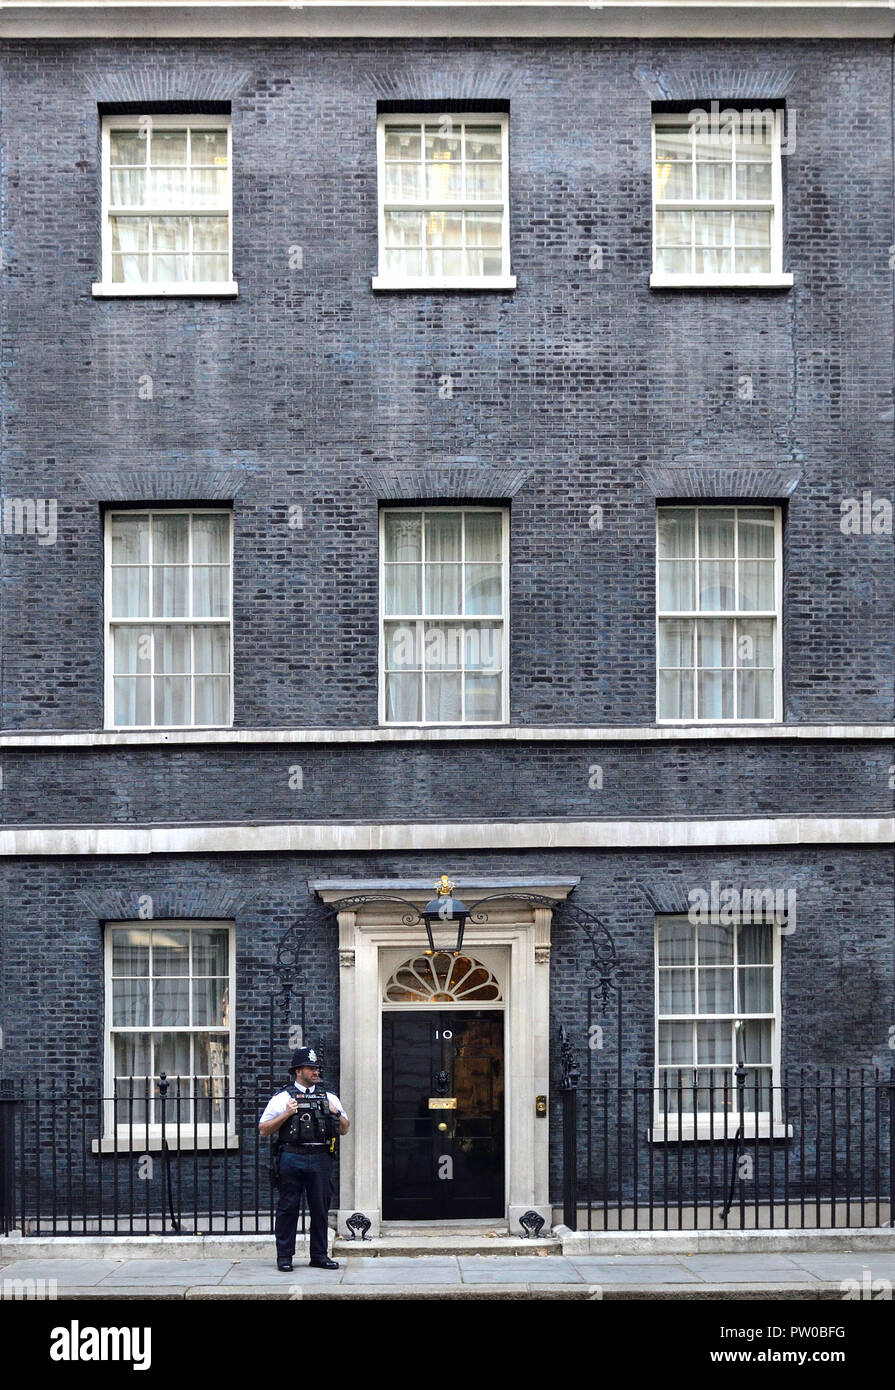 Agent de police à l'entrée de au 10, Downing Street, Londres, Angleterre, Royaume-Uni. Banque D'Images